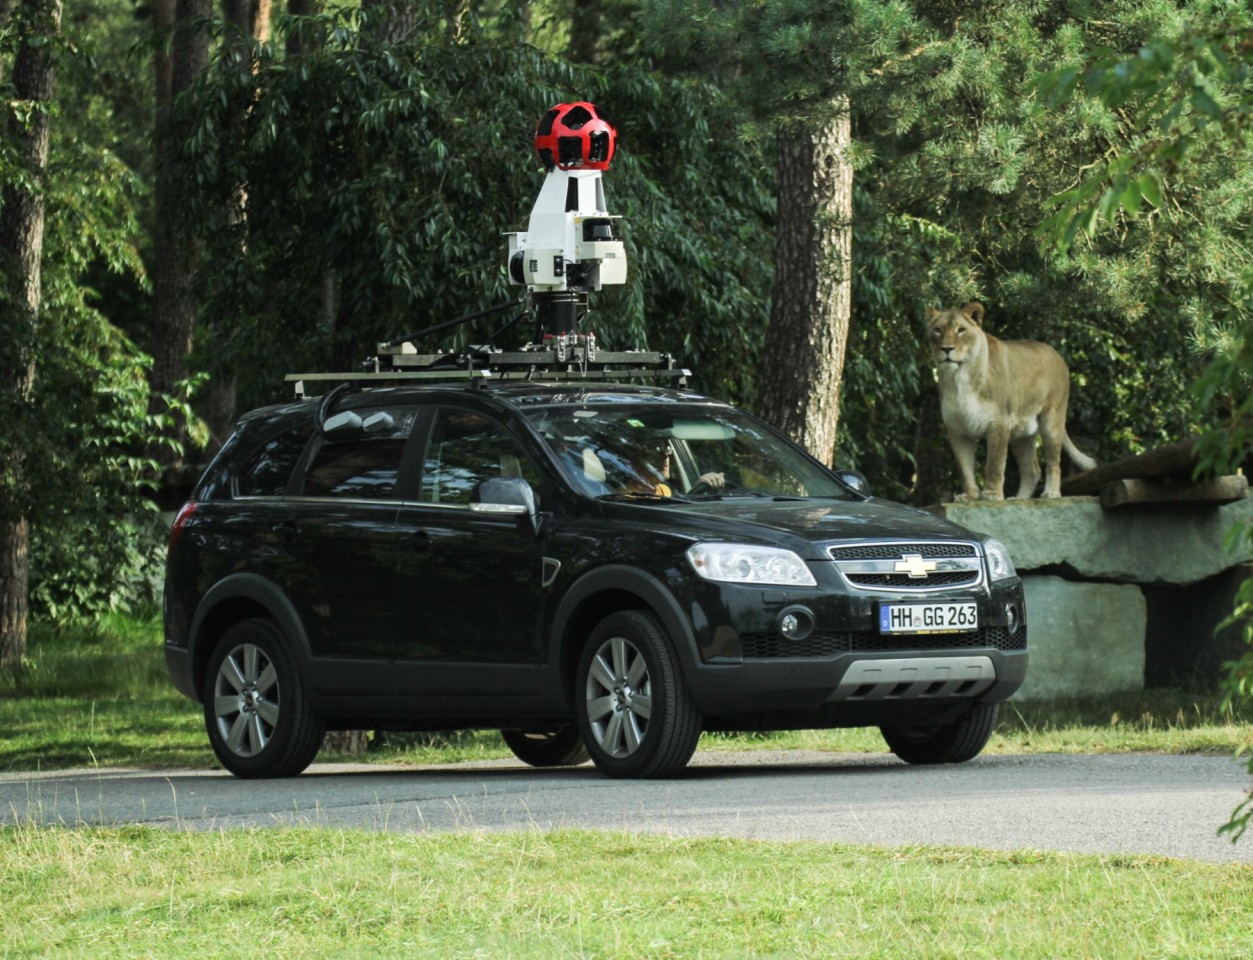 Unter strenger Beobachtung: Das Google-Fahrzeug bei seiner Tour durch das Raubtiergehege.